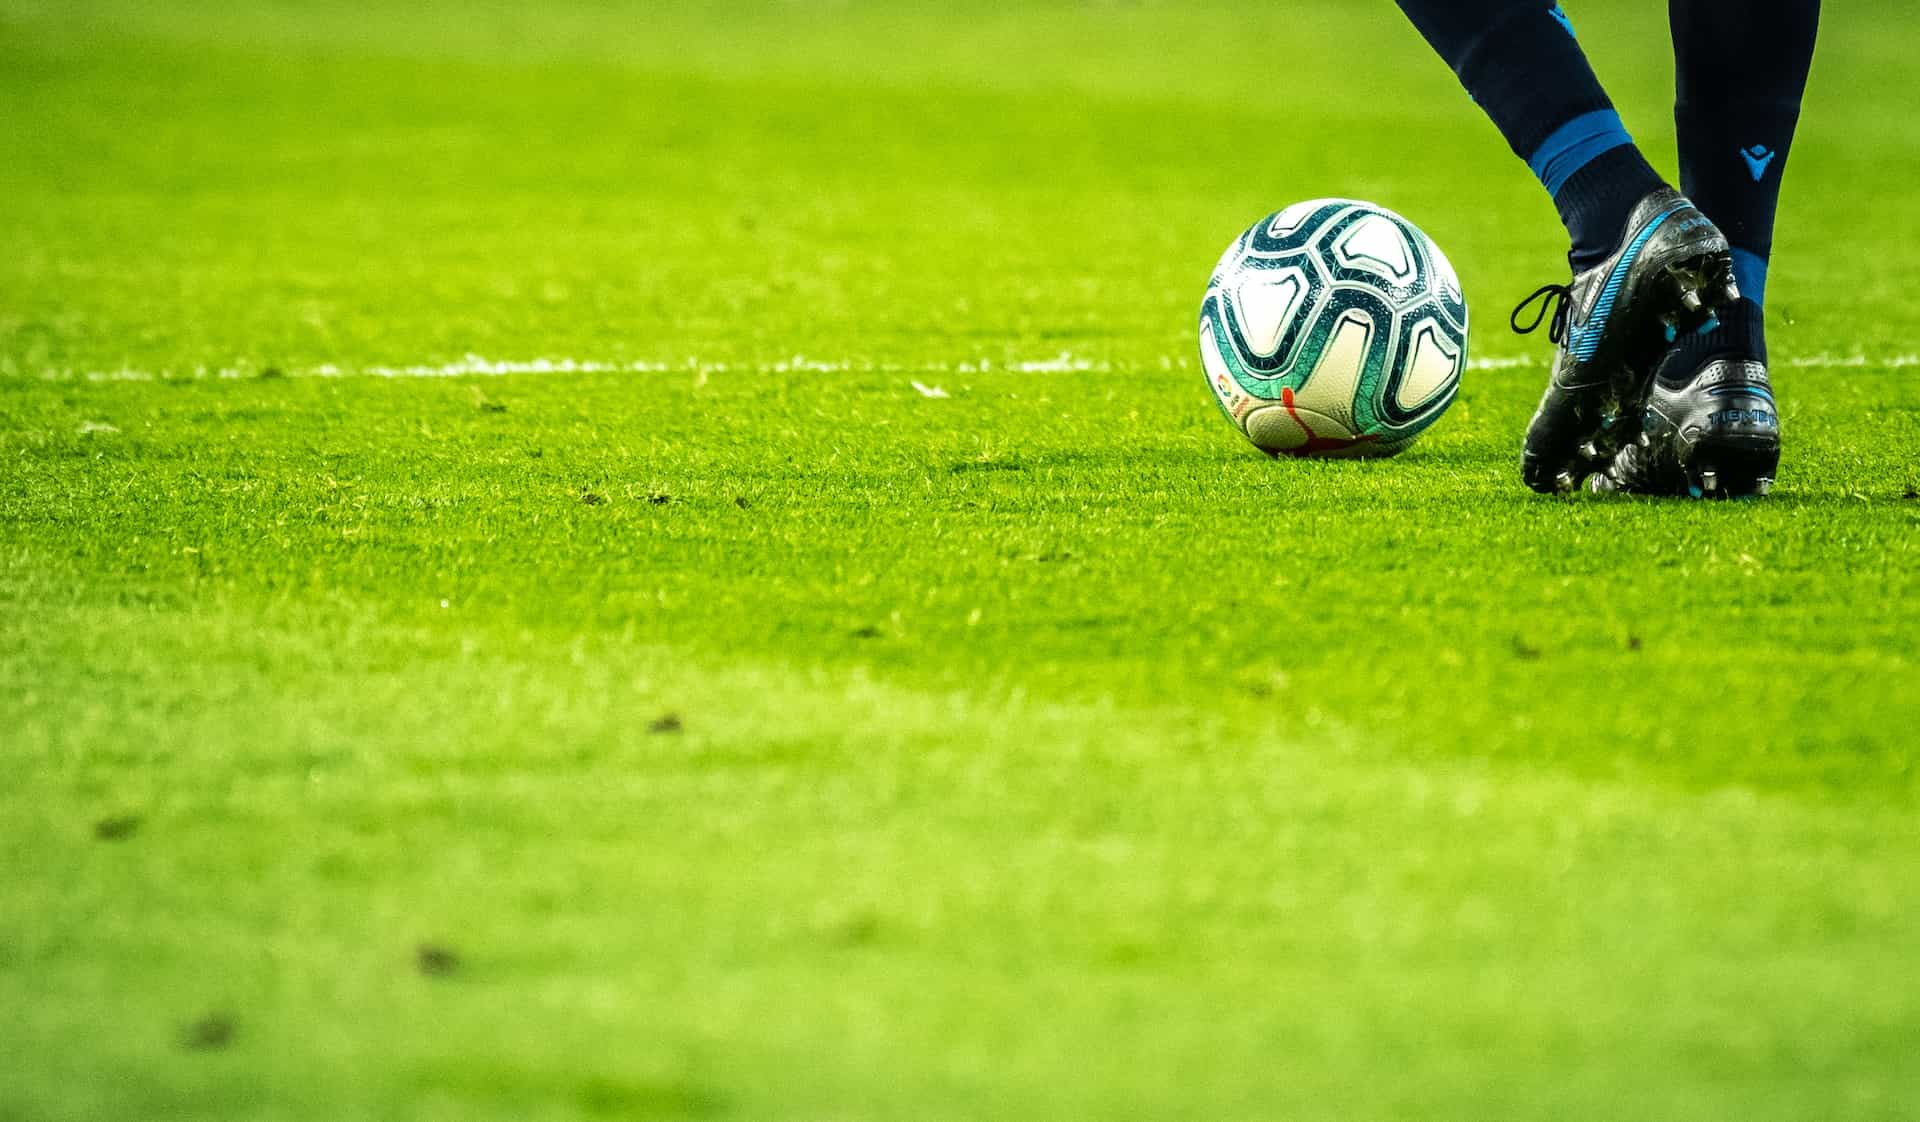 Pies de un futbolista junto a un balón en un campo de fútbol.